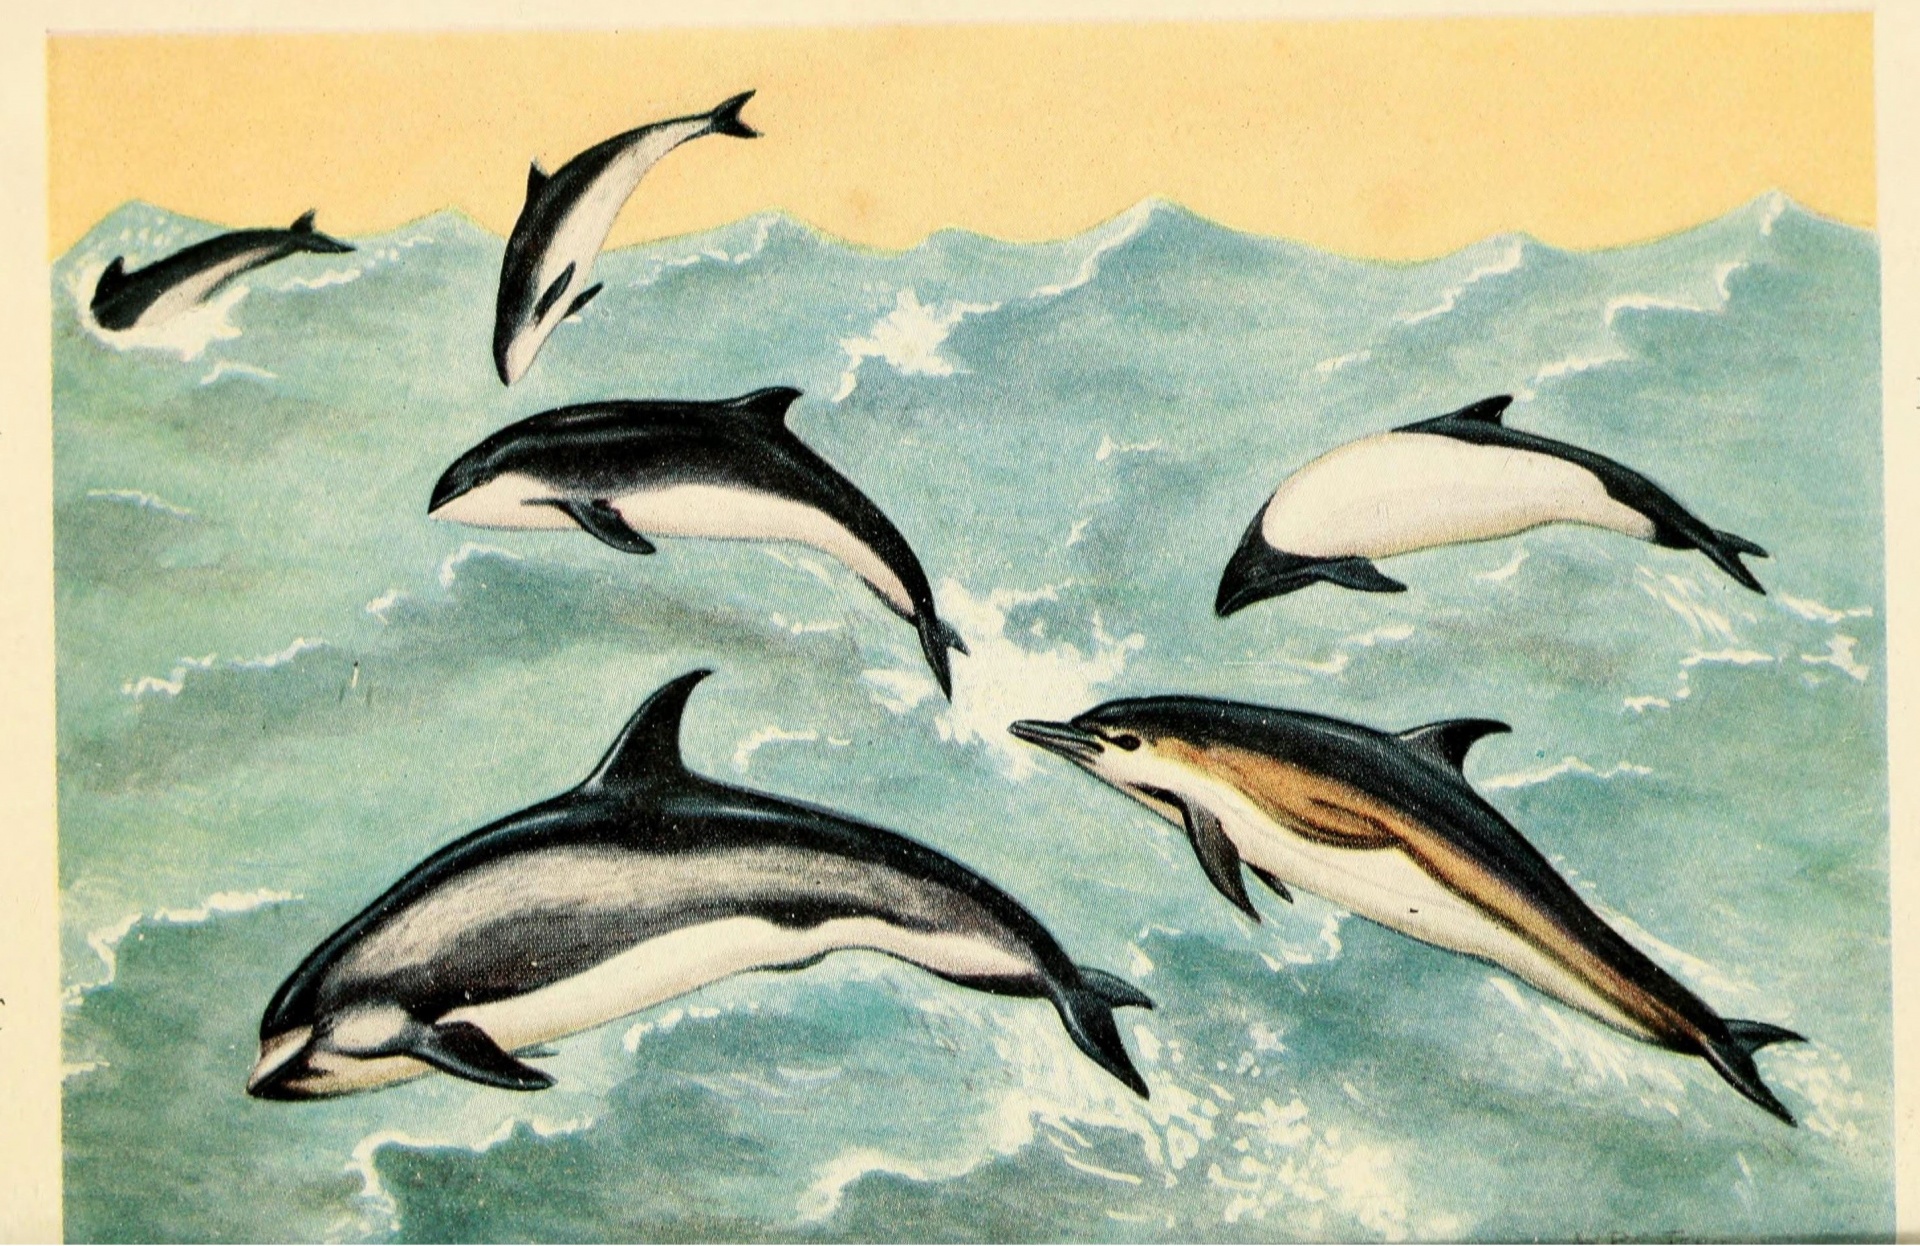 Delfines y ballenas